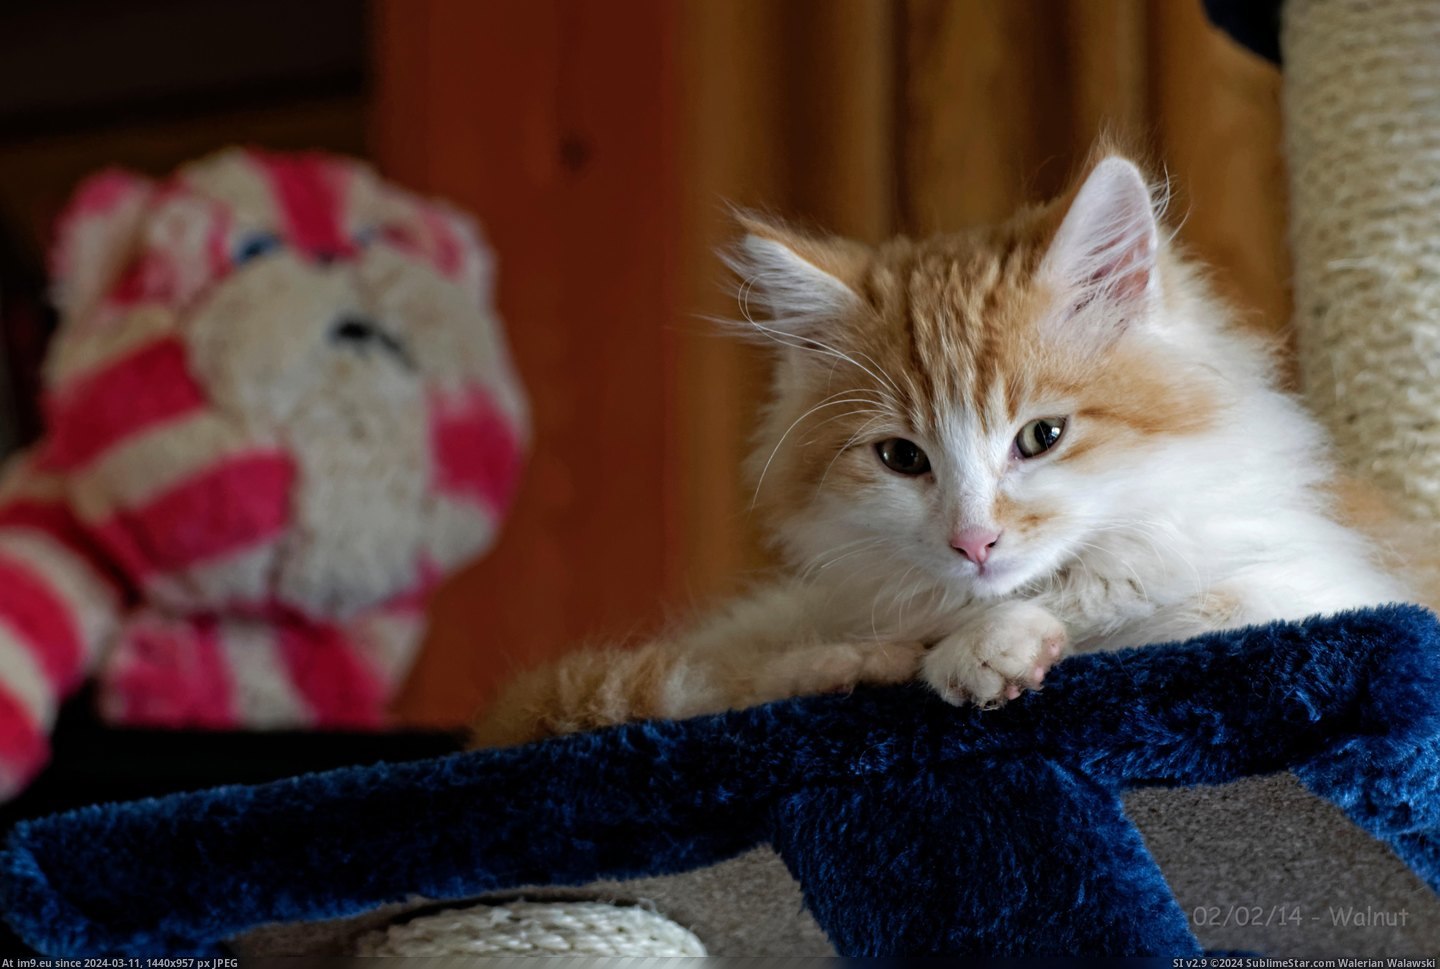 #Cats #Kitten #Walnut #Mistoffelees #Maine #Coon [Cats] My Maine Coon Kitten, Walnut Mistoffelees Pic. (Bild von album My r/CATS favs))